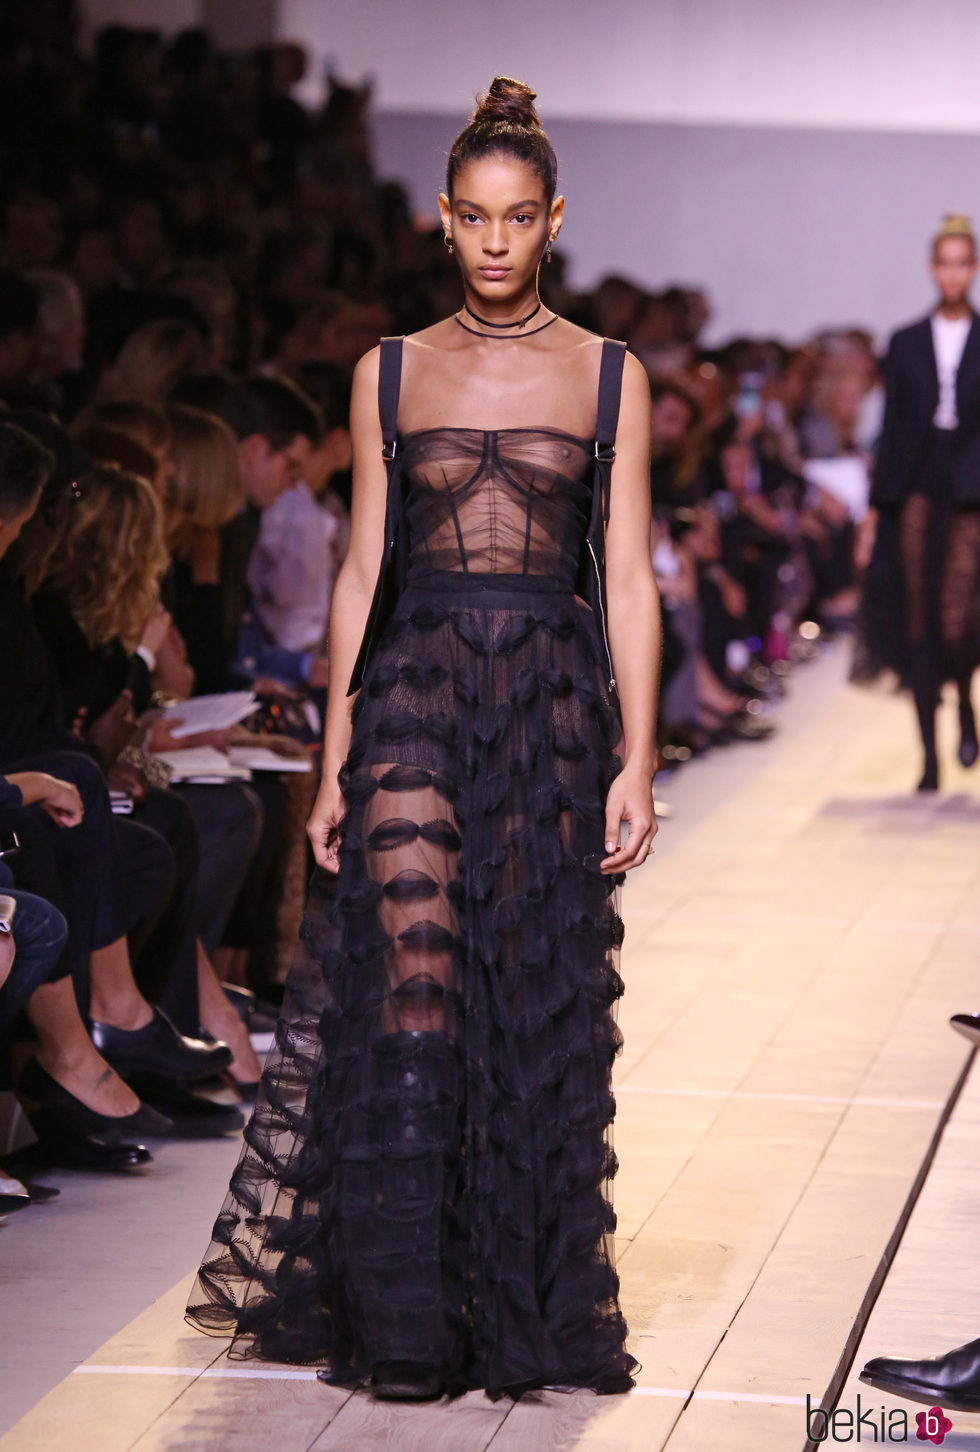 Vestido negro de transparencias de la colección primavera/verano 2017 de Dior en Paris Fashion Week